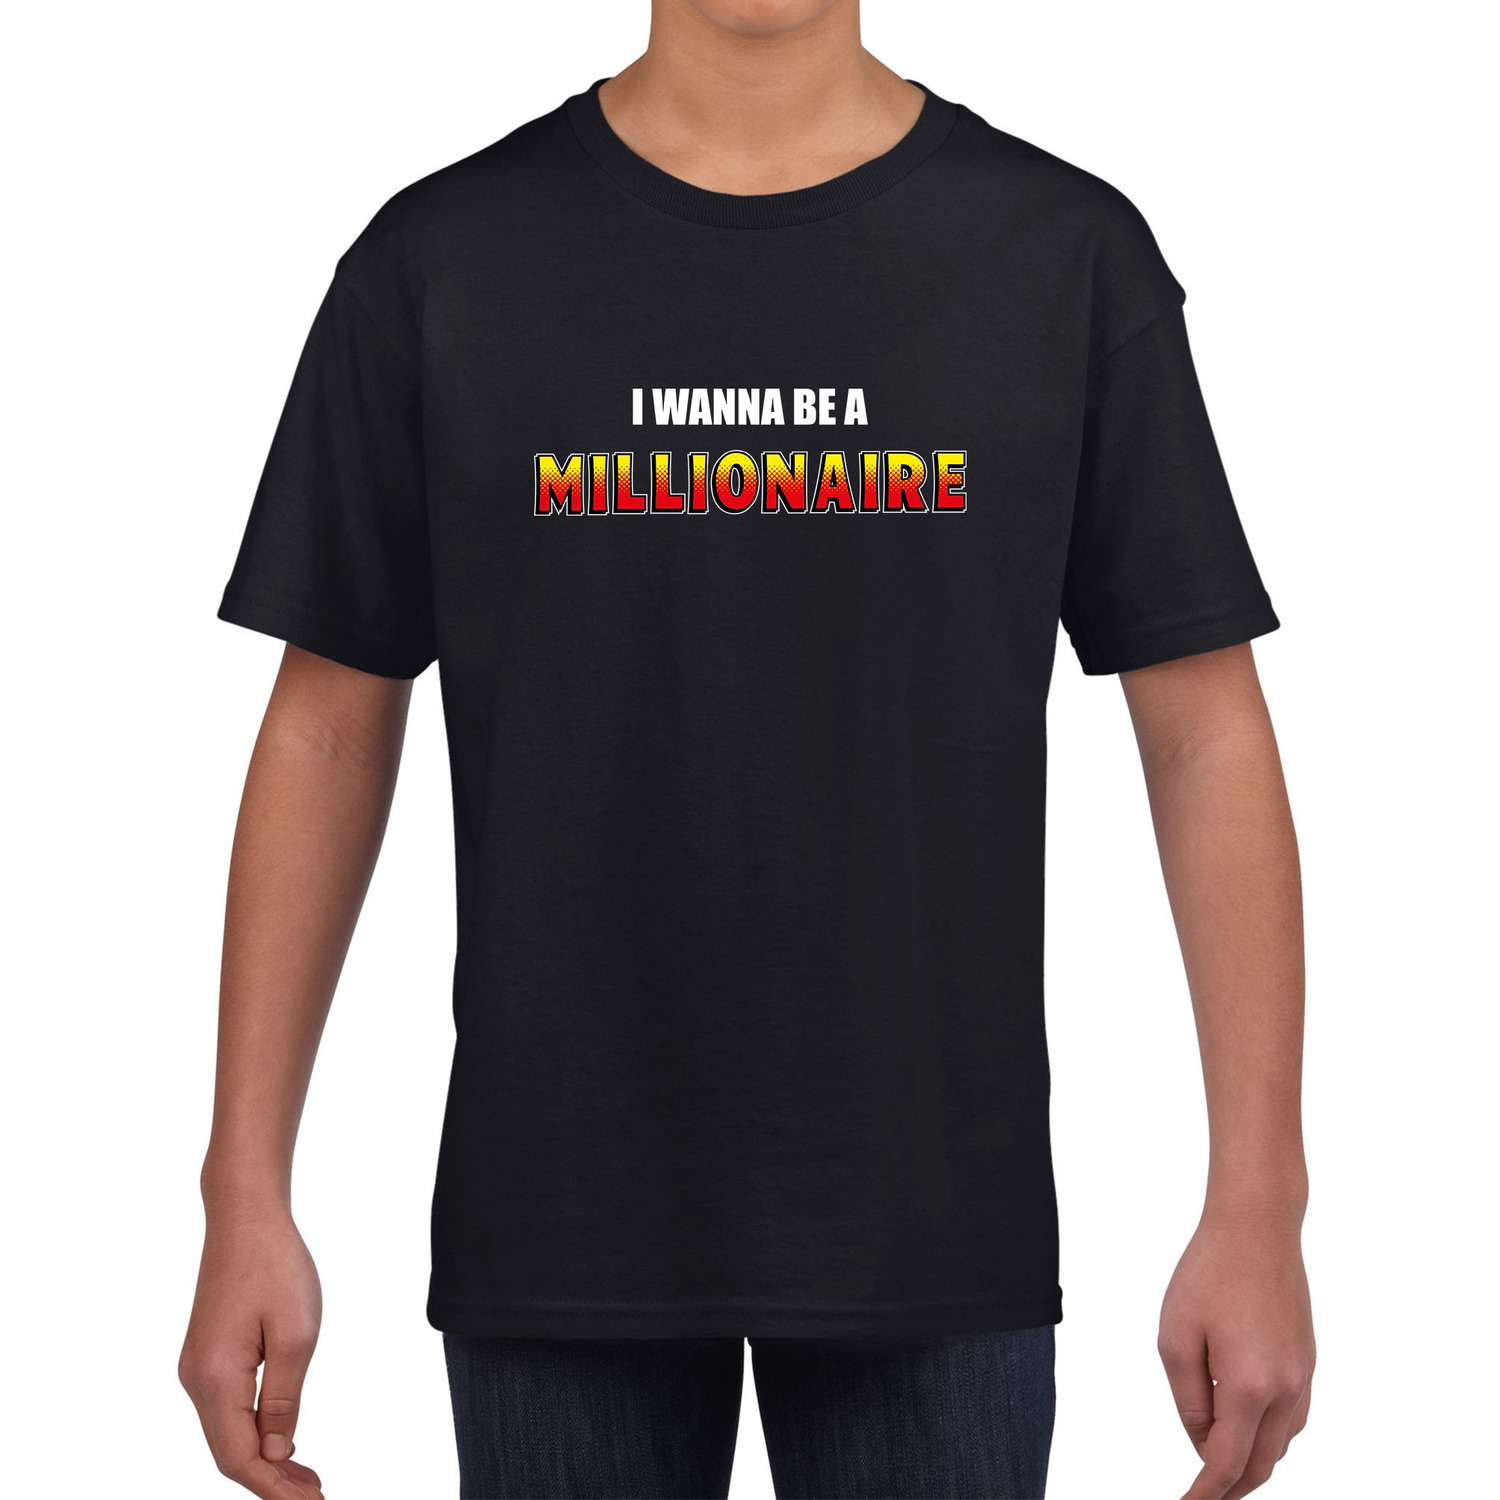 I wanna be a Millionaire fun tekst t shirt zwart kids Fun tekst Verjaardag cadeau kado t shirt kids